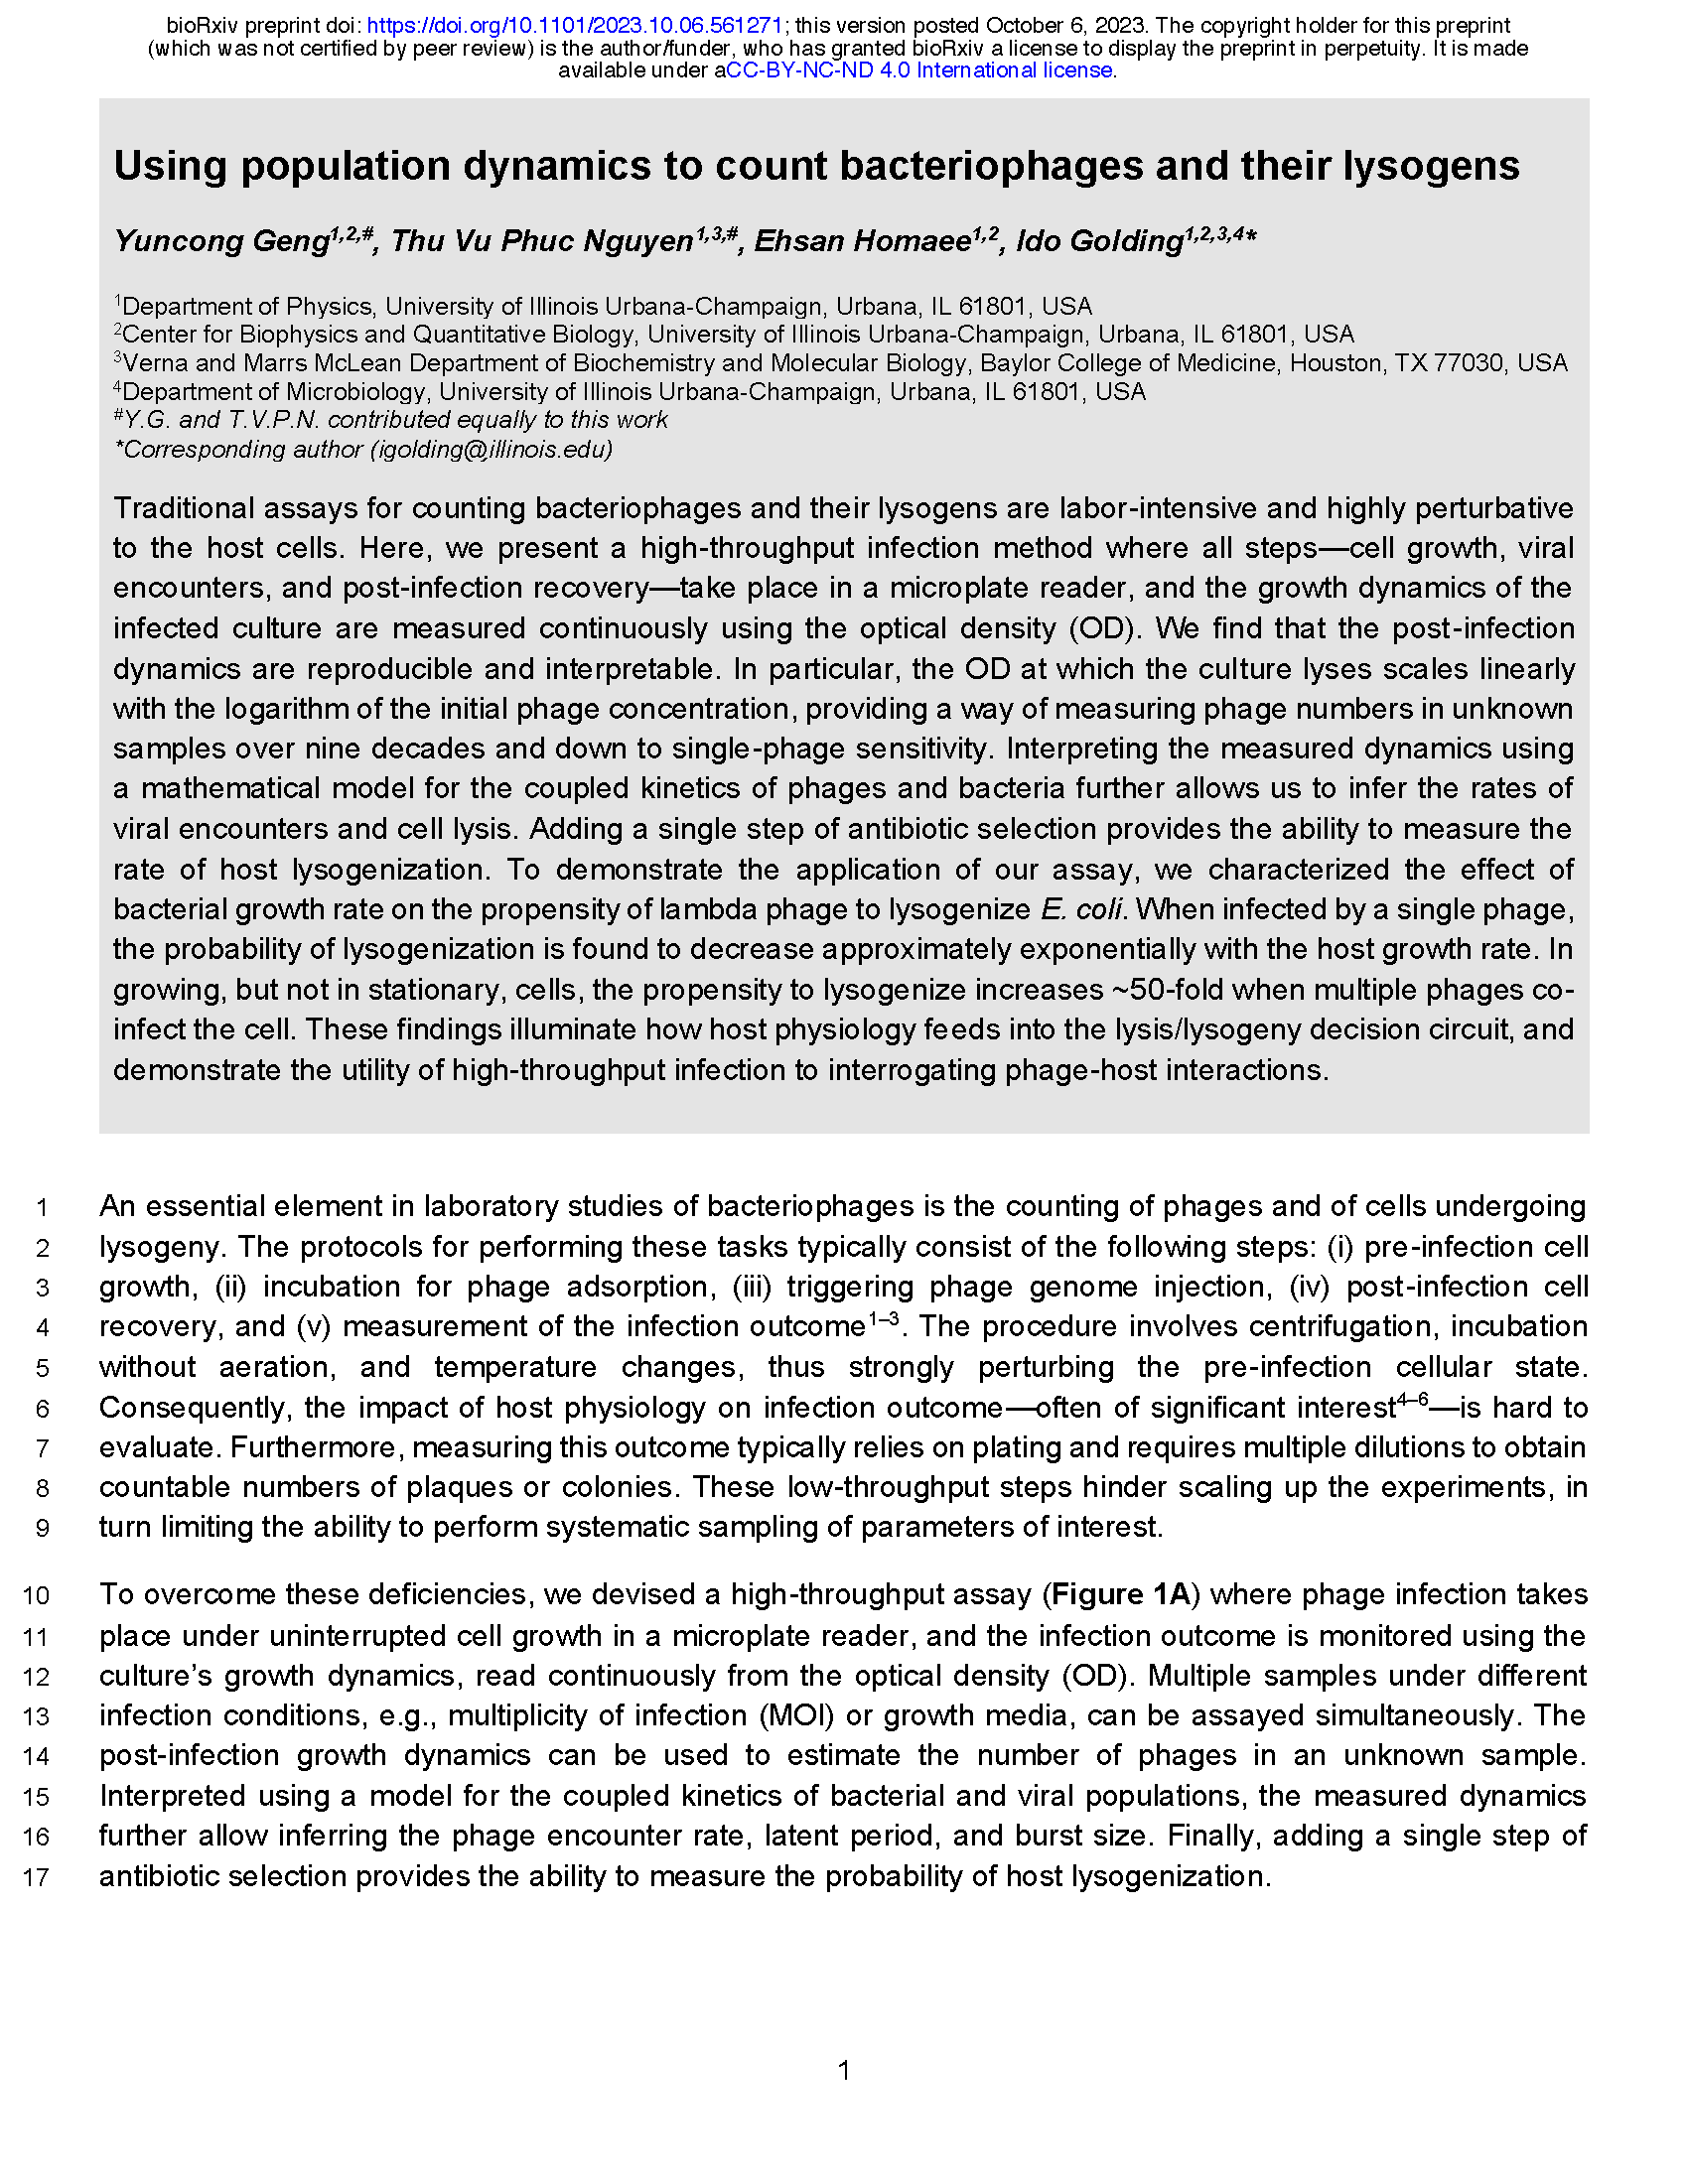 Geng, Nguyen, et al., bioRxiv 2023 [PDF]